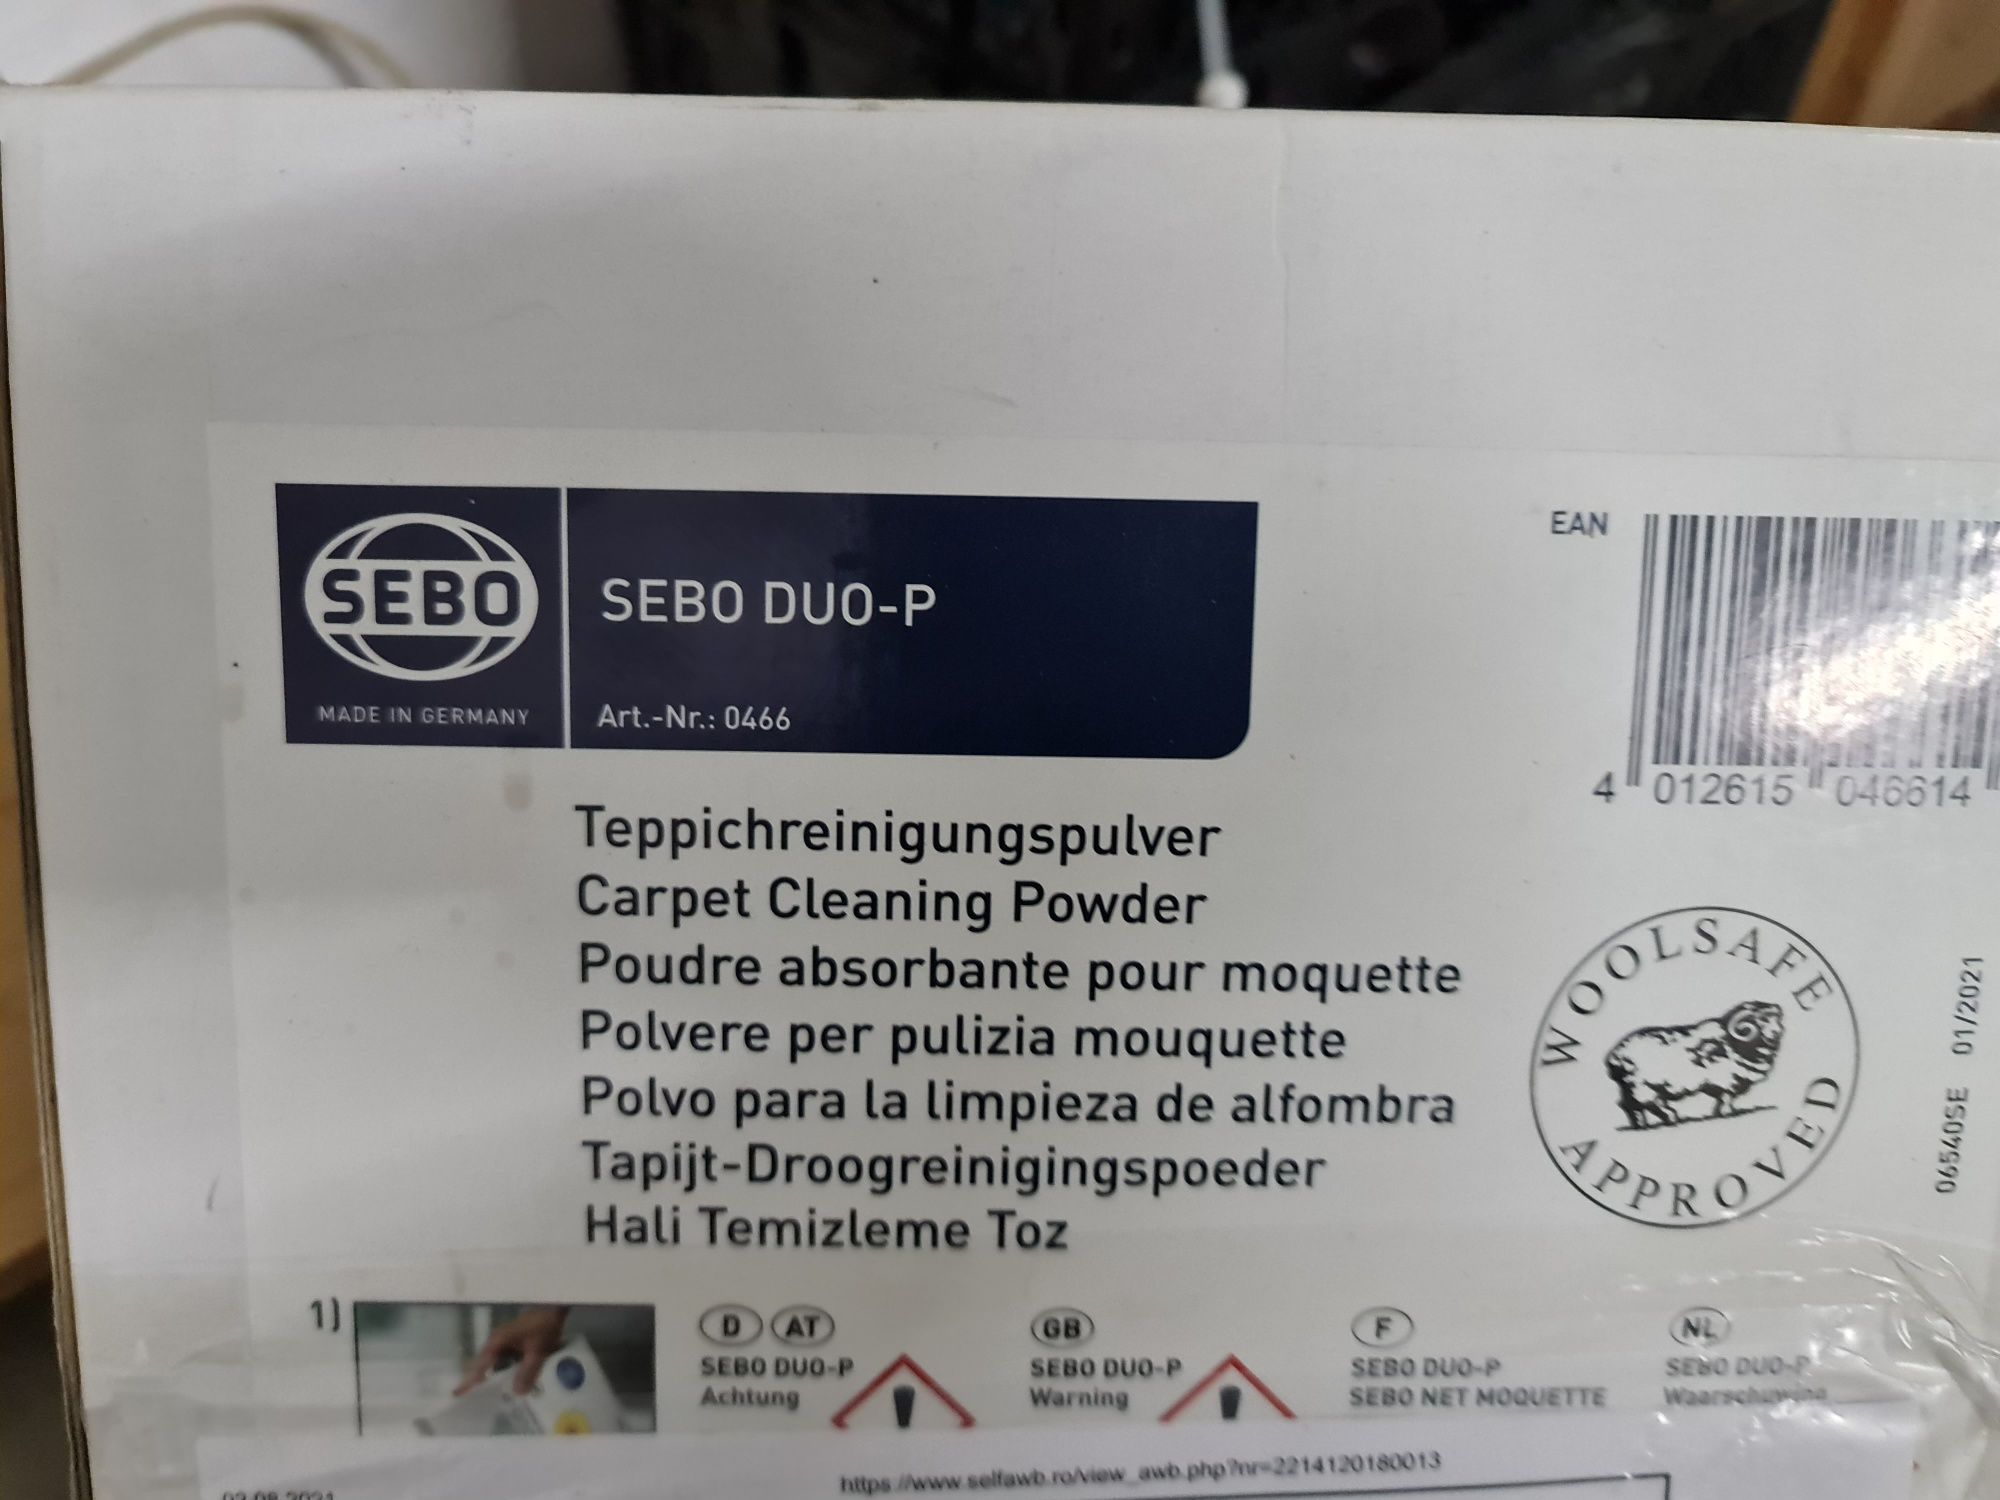 Sebo Duo-P, 500g, detergent pudra pt curatarea uscata a covoarelor